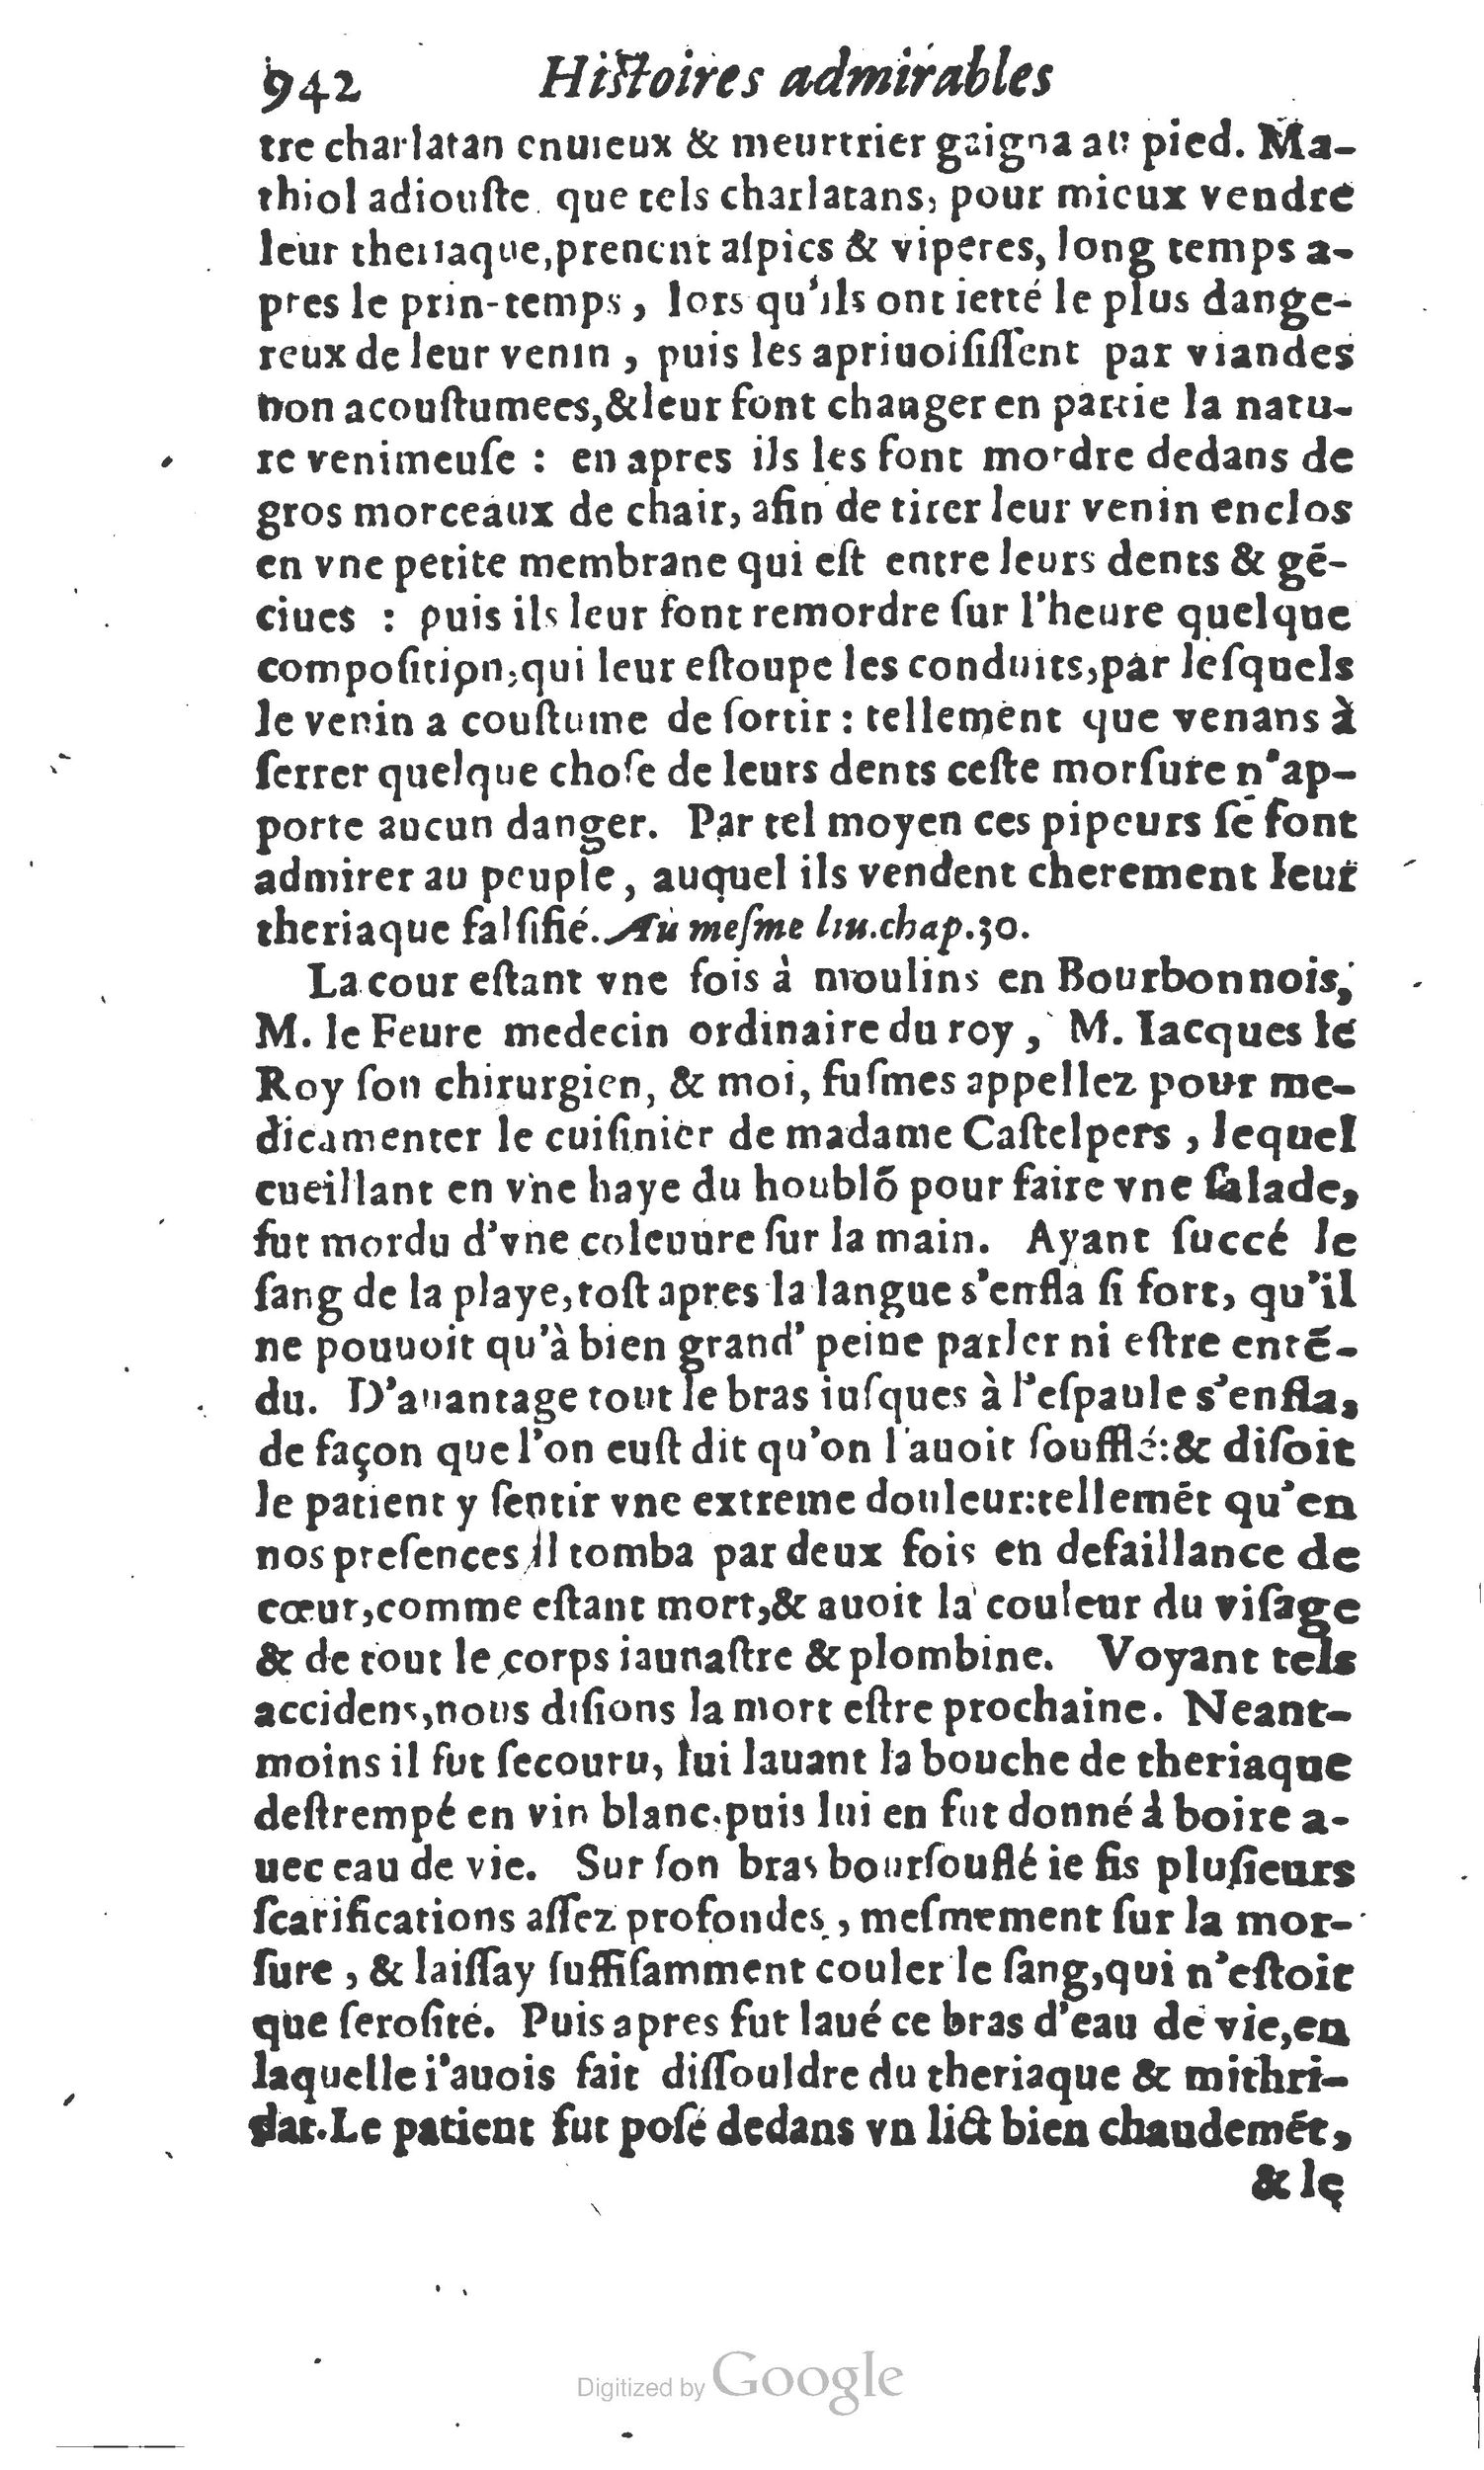 1610 Trésor d’histoires admirables et mémorables de nostre temps Marceau Princeton_Page_0963.jpg